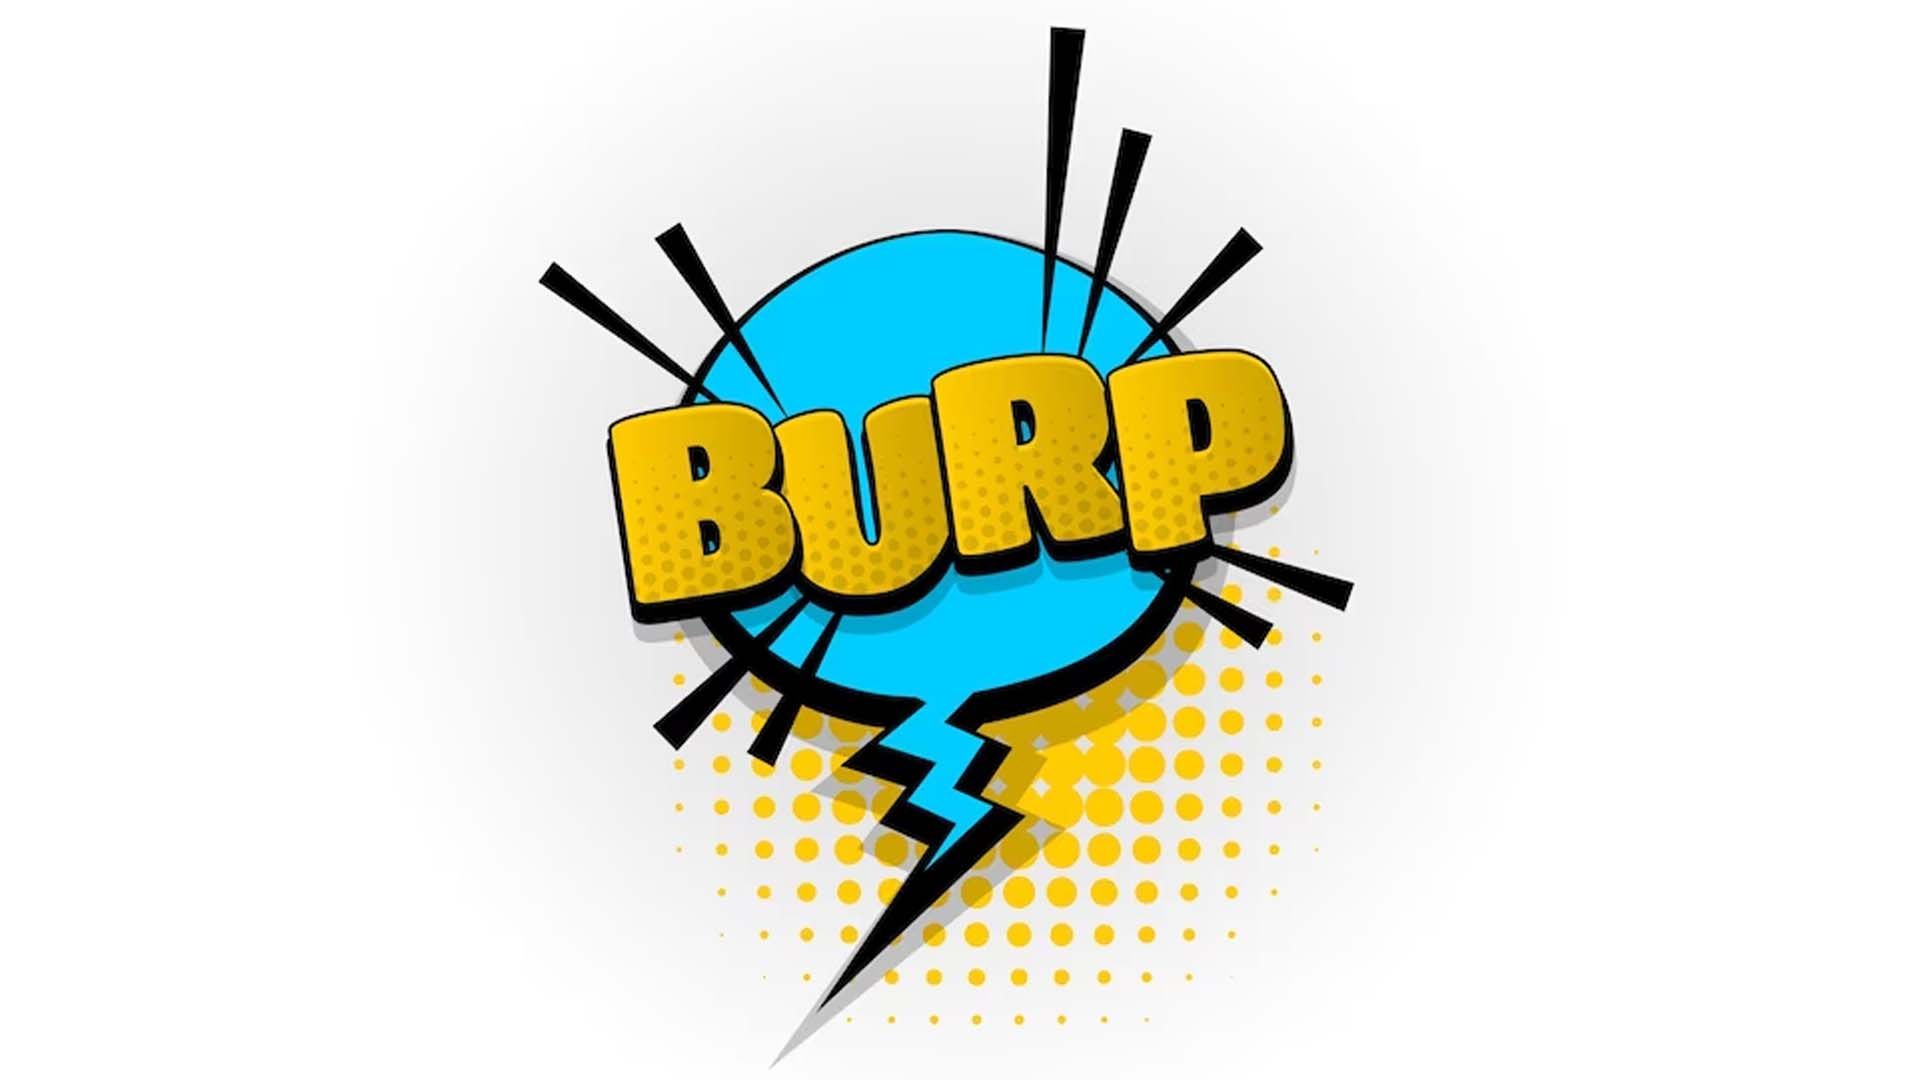 Burping